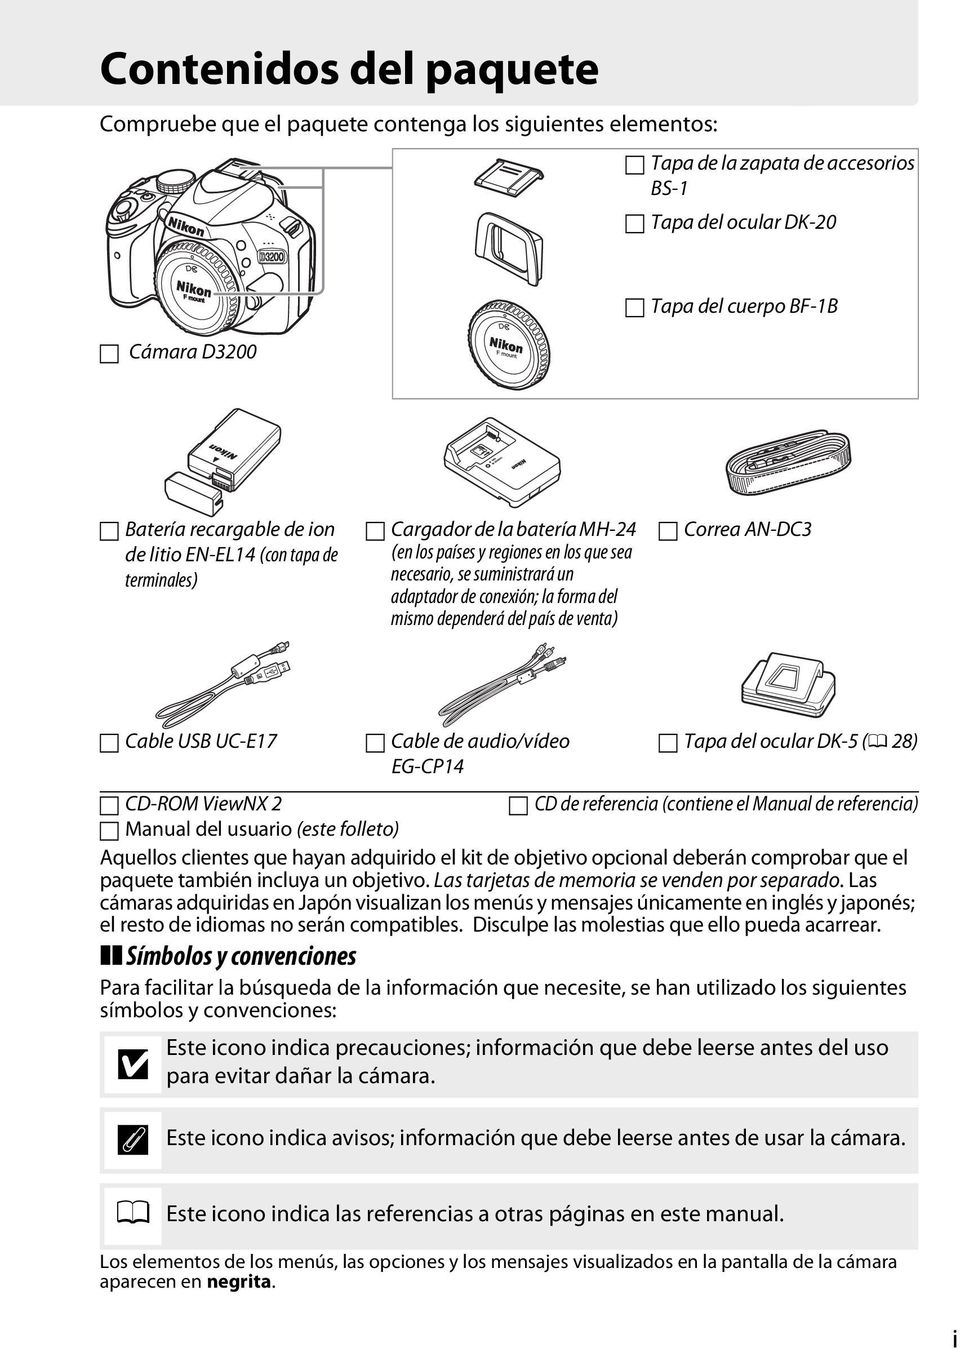 del país de venta) Correa AN-DC3 Cable USB UC-E17 CD-ROM ViewNX 2 Manual del usuario (este folleto) Cable de audio/vídeo EG-CP14 Tapa del ocular DK-5 (0 28) Aquellos clientes que hayan adquirido el